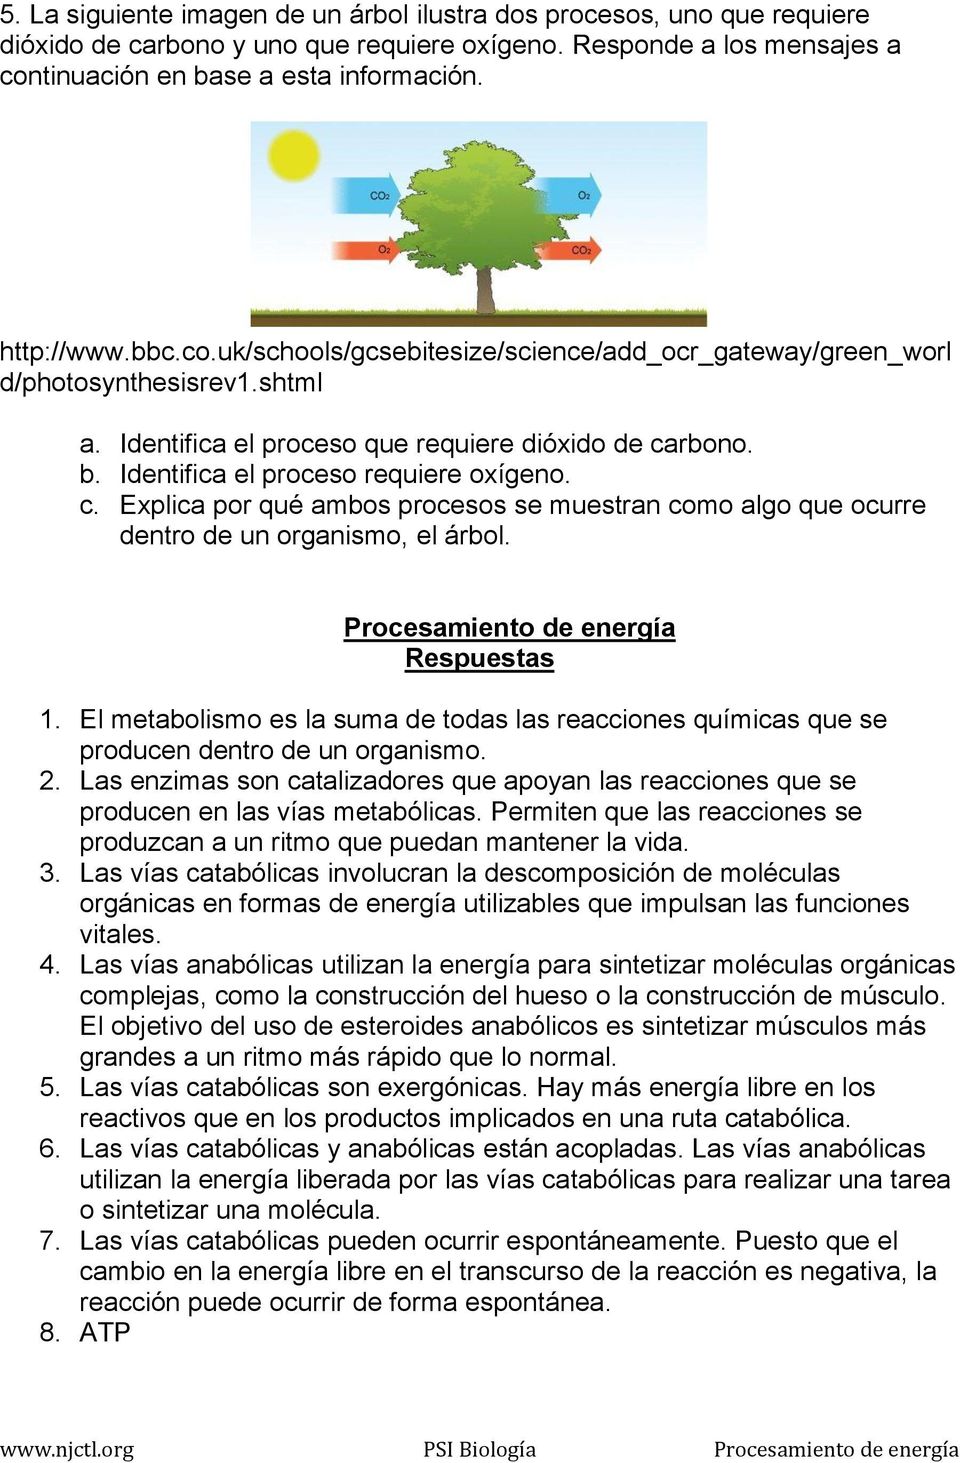 rbono. b. Identifica el proceso requiere oxígeno. c. Explica por qué ambos procesos se muestran como algo que ocurre dentro de un organismo, el árbol. Procesamiento de energía Respuestas 1.